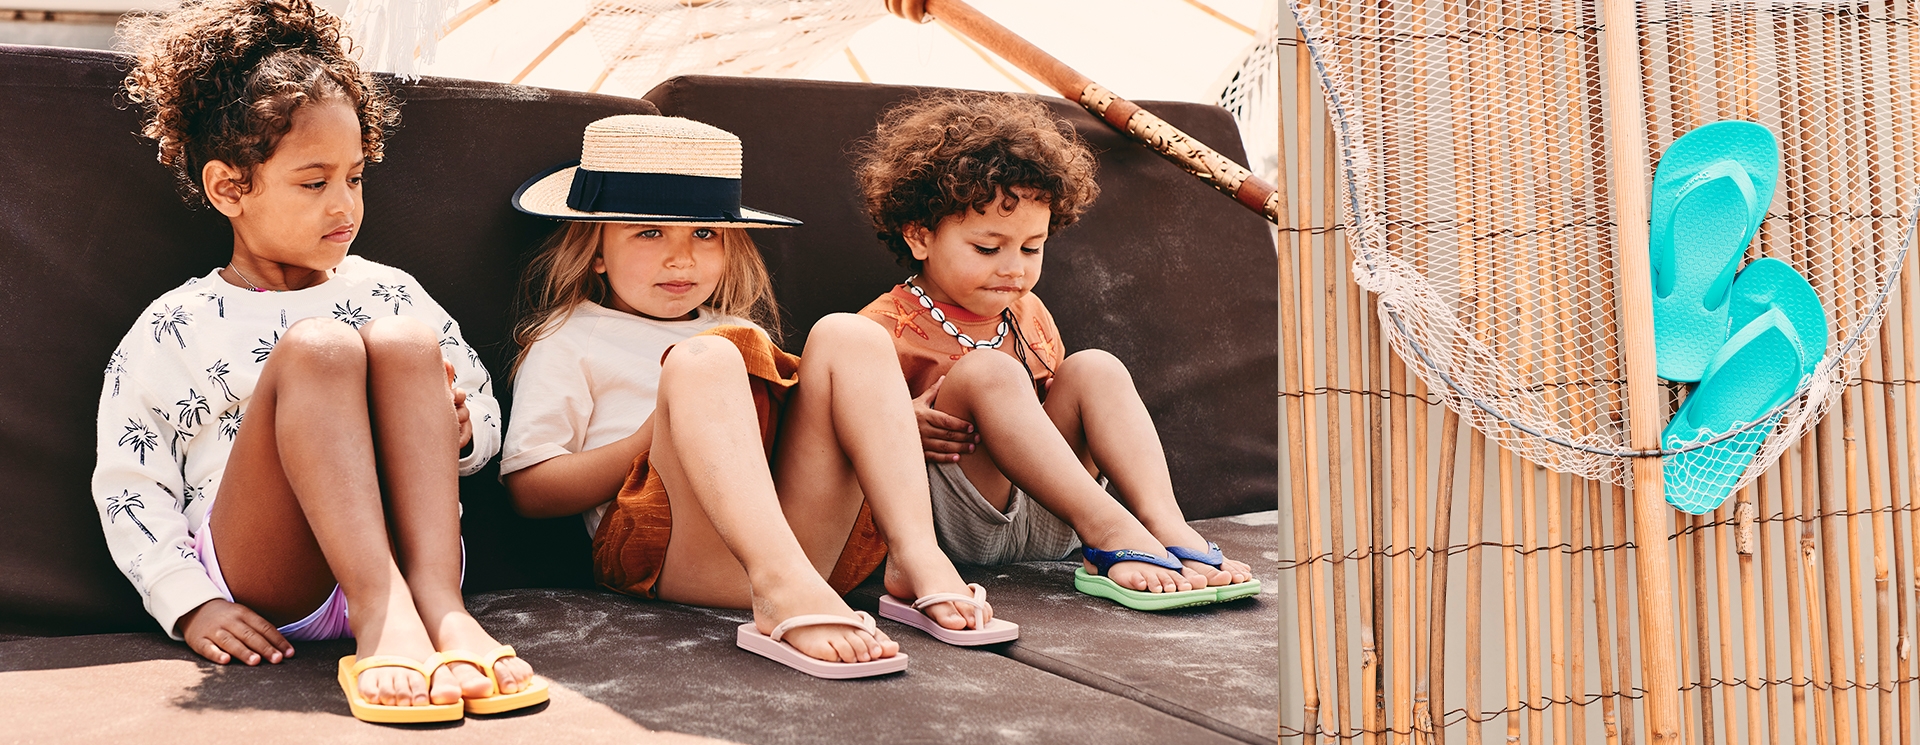 dorst pil Glimlach Kinder slippers | Slippery.nl - Dé online slipperwinkel!